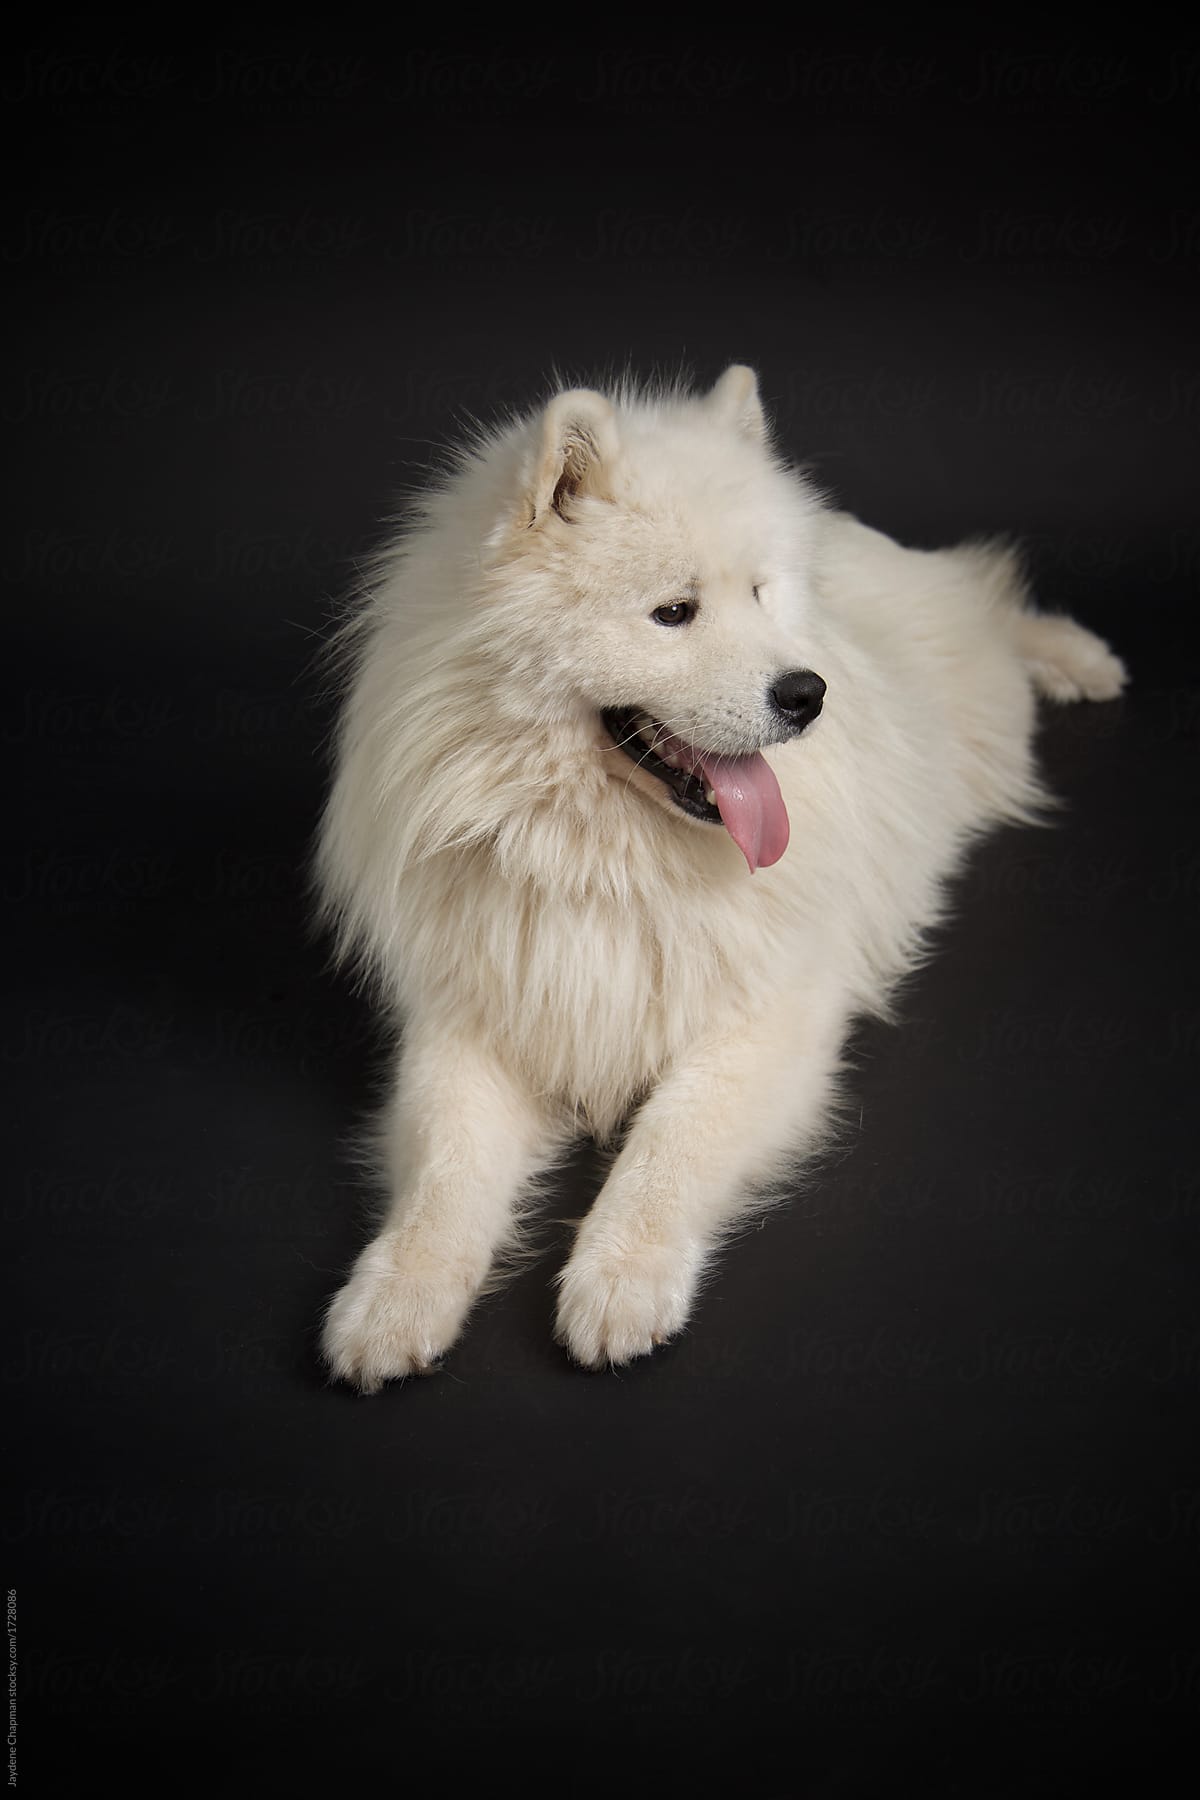 Big white Fluffy dog